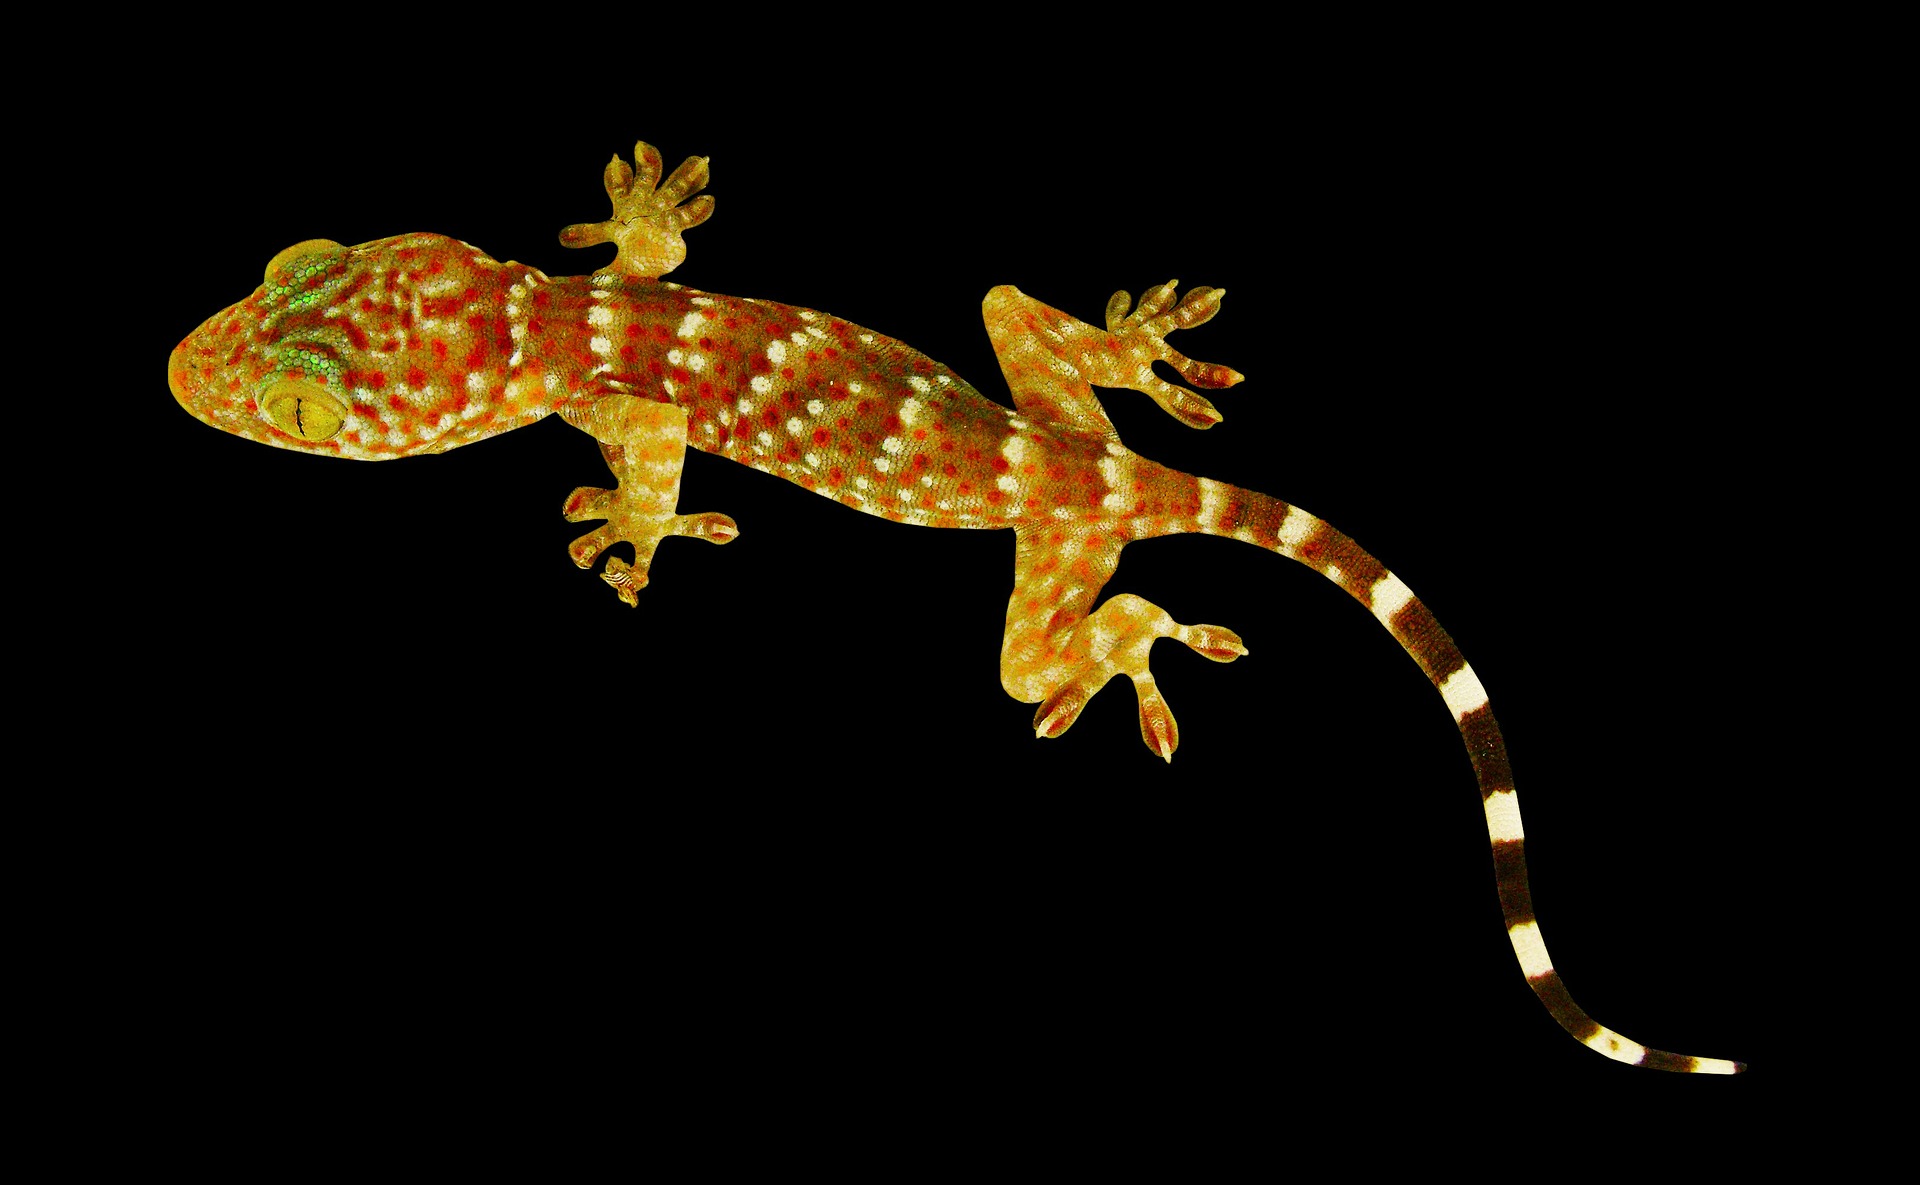 dlaczego gekon chodzi po szybie, jak gekon chodzi, wypustki na palcach gekona, gekony, animalistka.pl, animalistka, blog o zwierzętach, zoologiczny